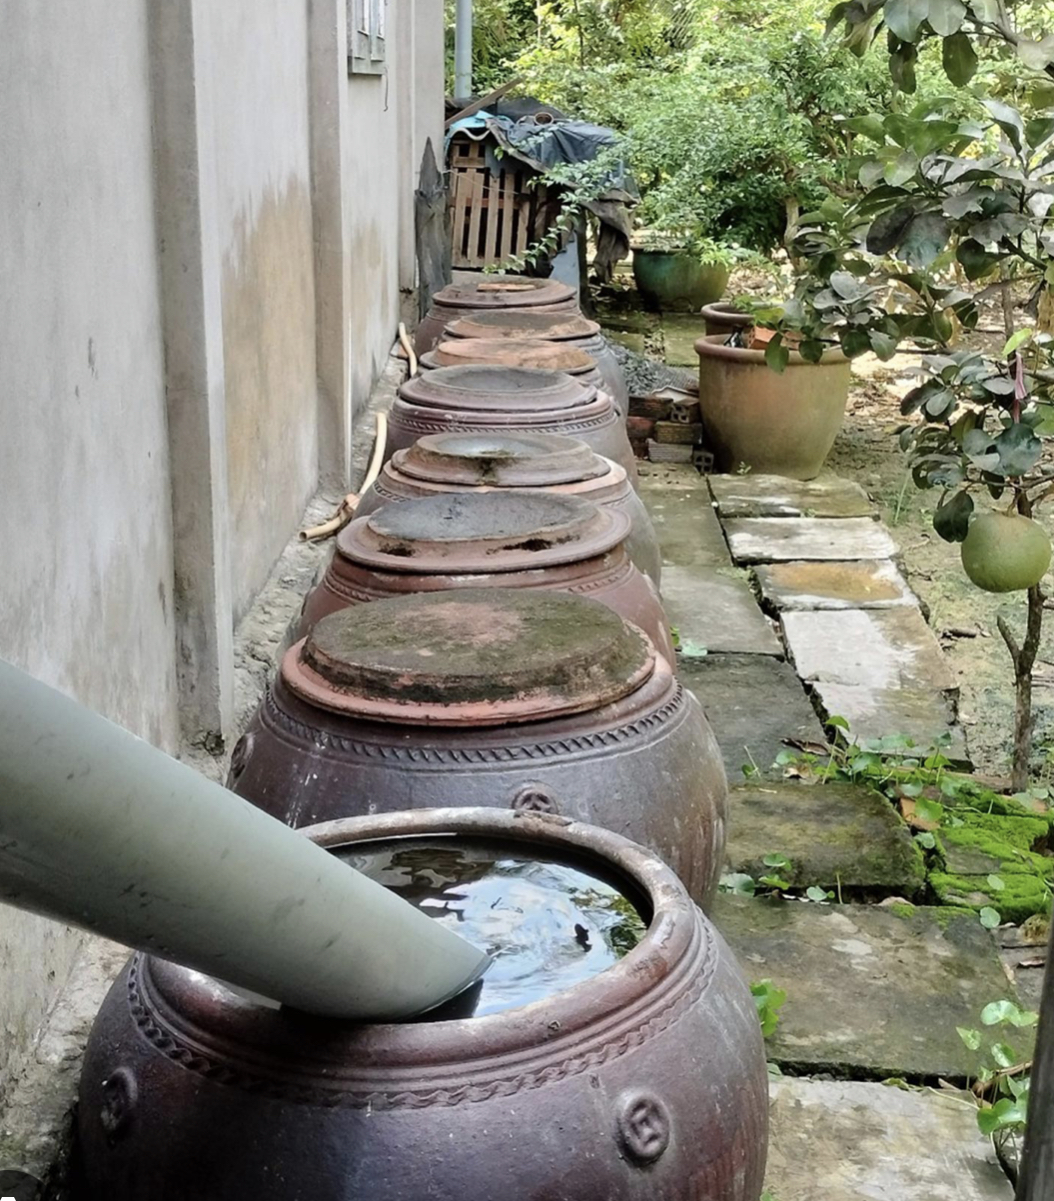 Người dân miền Tây đã biết trữ nước mưa để dùng trong mùa nắng từ hàng chục năm qua